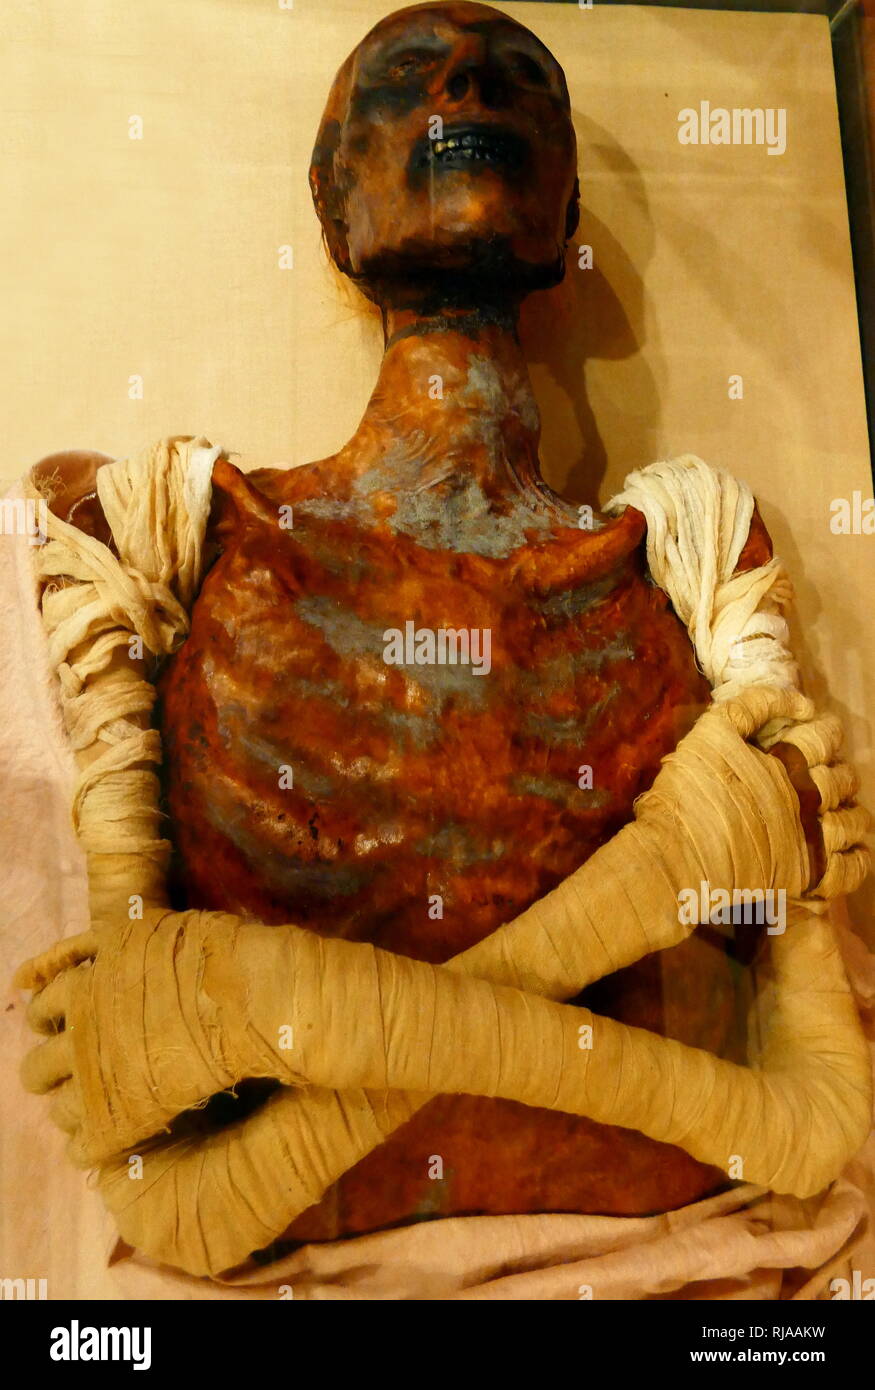 Replik der Mumie von Ramses II (1303 v. Chr. - 1213 v. Chr.). Ramses regierte als König von Ägypten (1279-1213 v. Chr.). Bekannt als Ramses der Große, war der dritte Pharao der 19. Dynastie. Mumie des Pharao offenbart eine gekrümmte Nase und kräftige Kiefer. Es liegt bei etwa 1,7 m (5 ft 7 in).[67] Gaston Maspero, erste ausgepackt, die Mumie von Ramses II. Die mikroskopische Untersuchung der Wurzeln von Ramses II Haar bewies, dass der König Haare ursprünglich rot war, was darauf schließen lässt, dass er aus einer Familie von redheads. 1974 Ägyptologen sein Grab besuchen festgestellt, dass der Zustand der Mumie war r Stockfoto